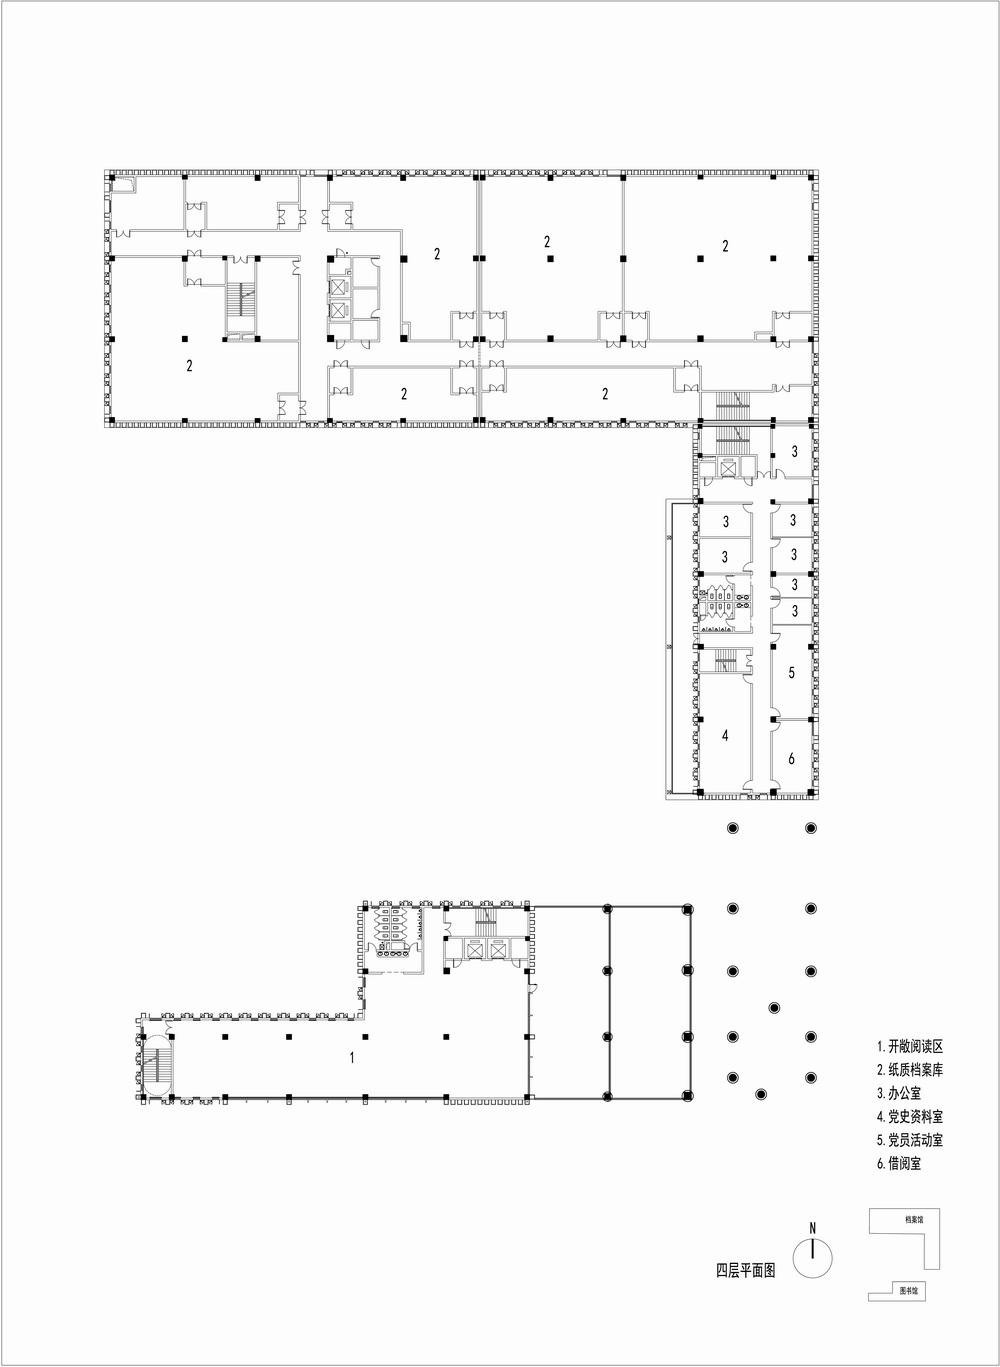 沂南图书档案馆 建筑设计 / 中央美术学院建筑7工作室